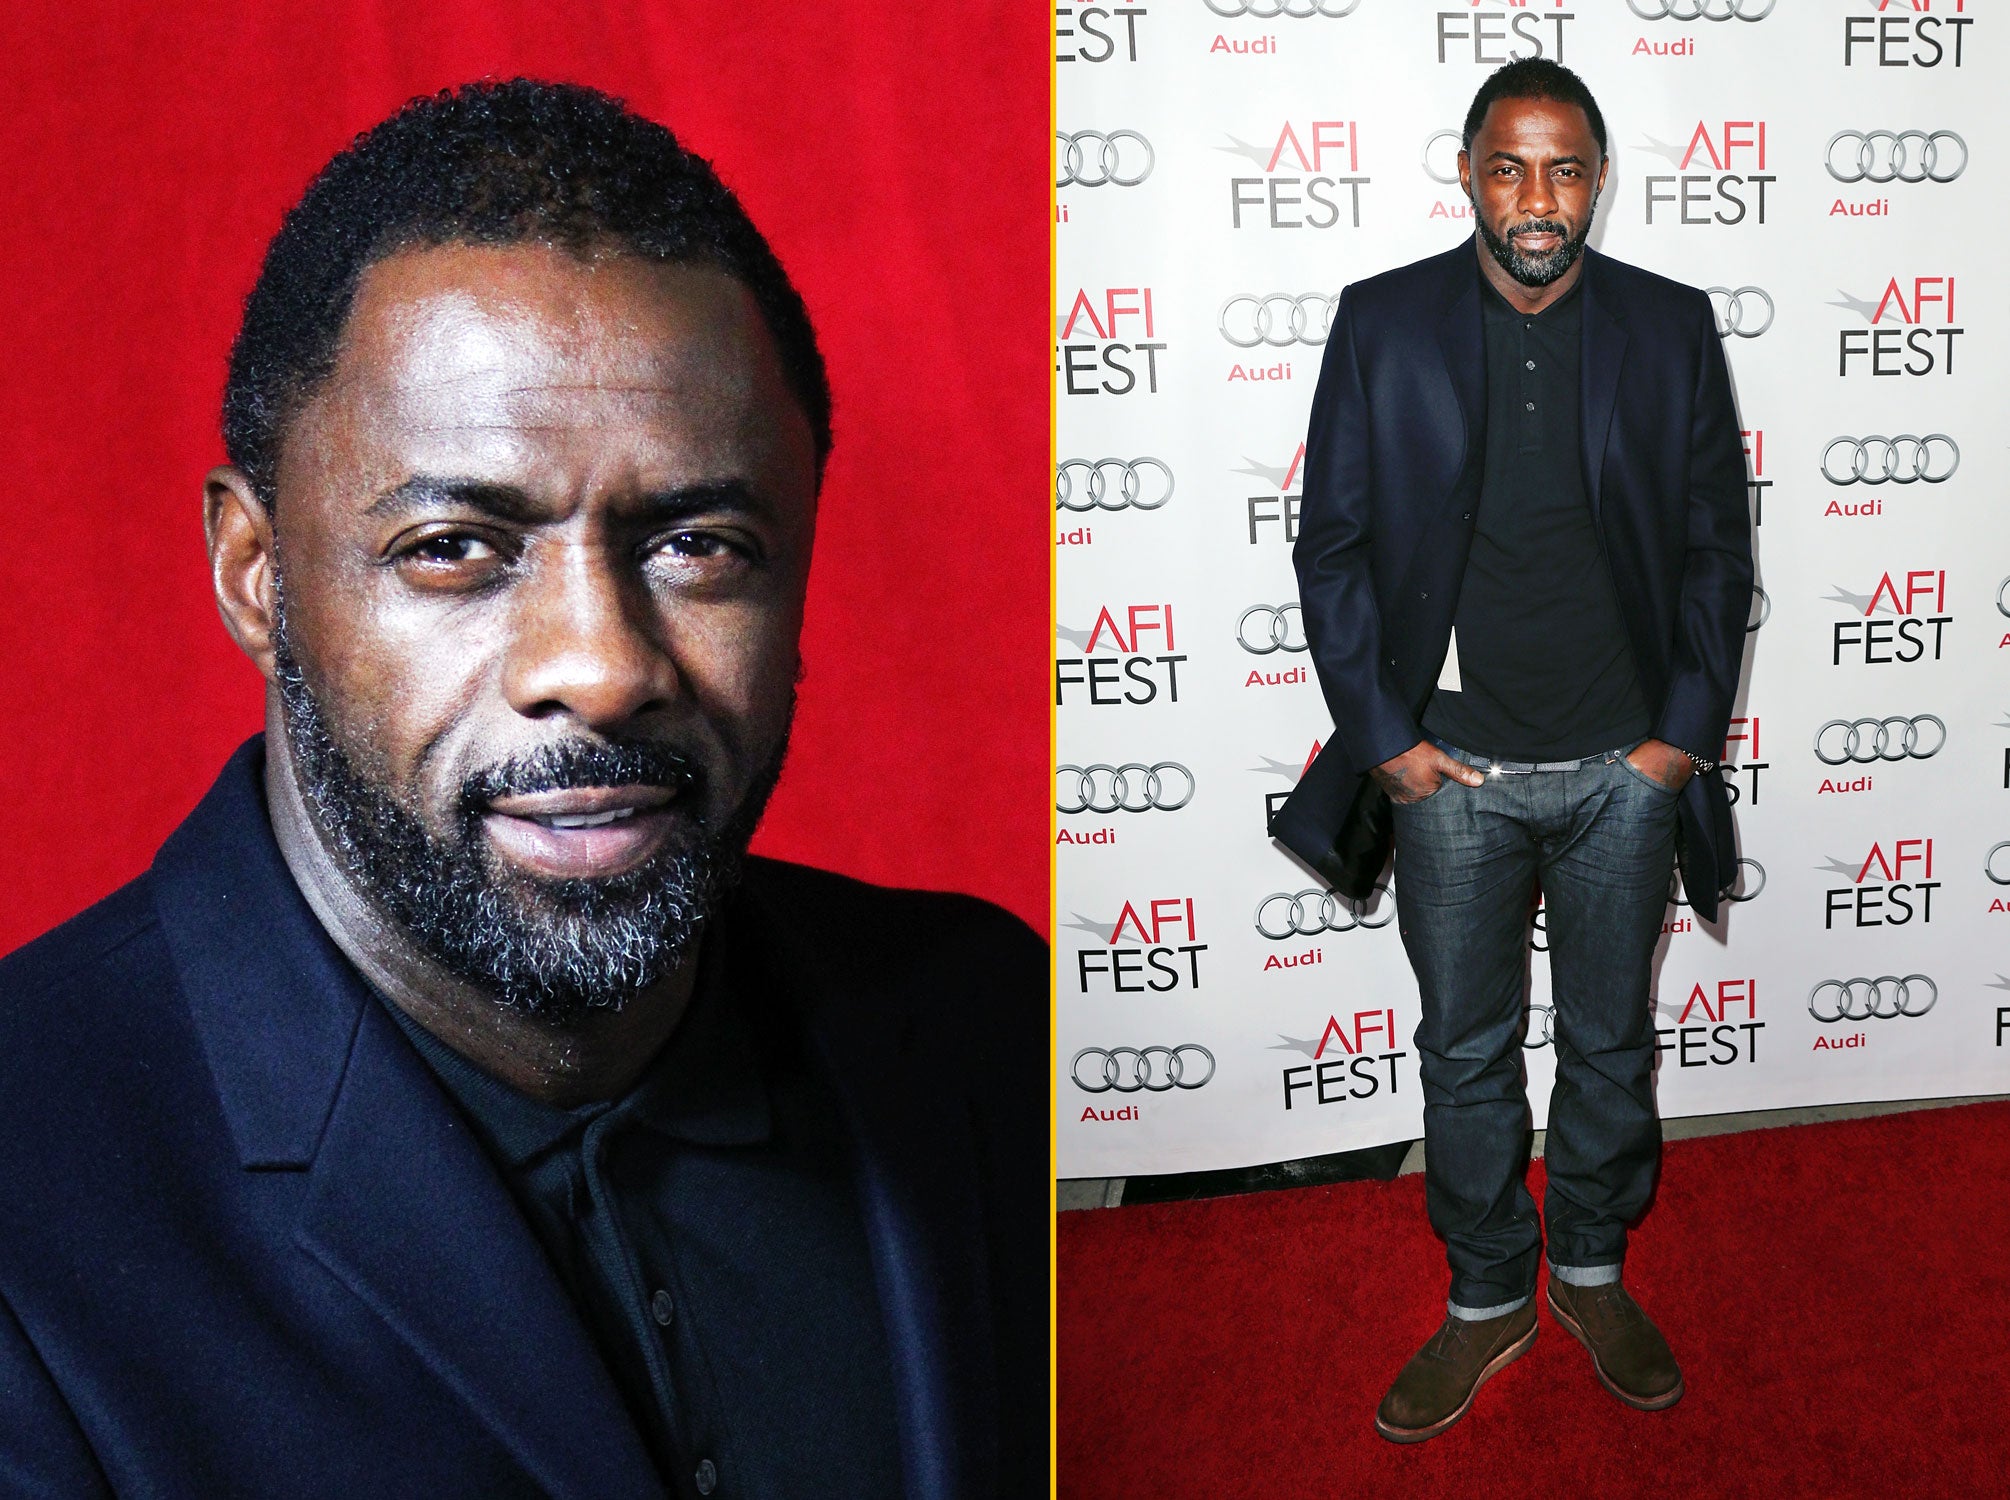 Idris Elba to Star in New Thriller 'Bastille Day'
